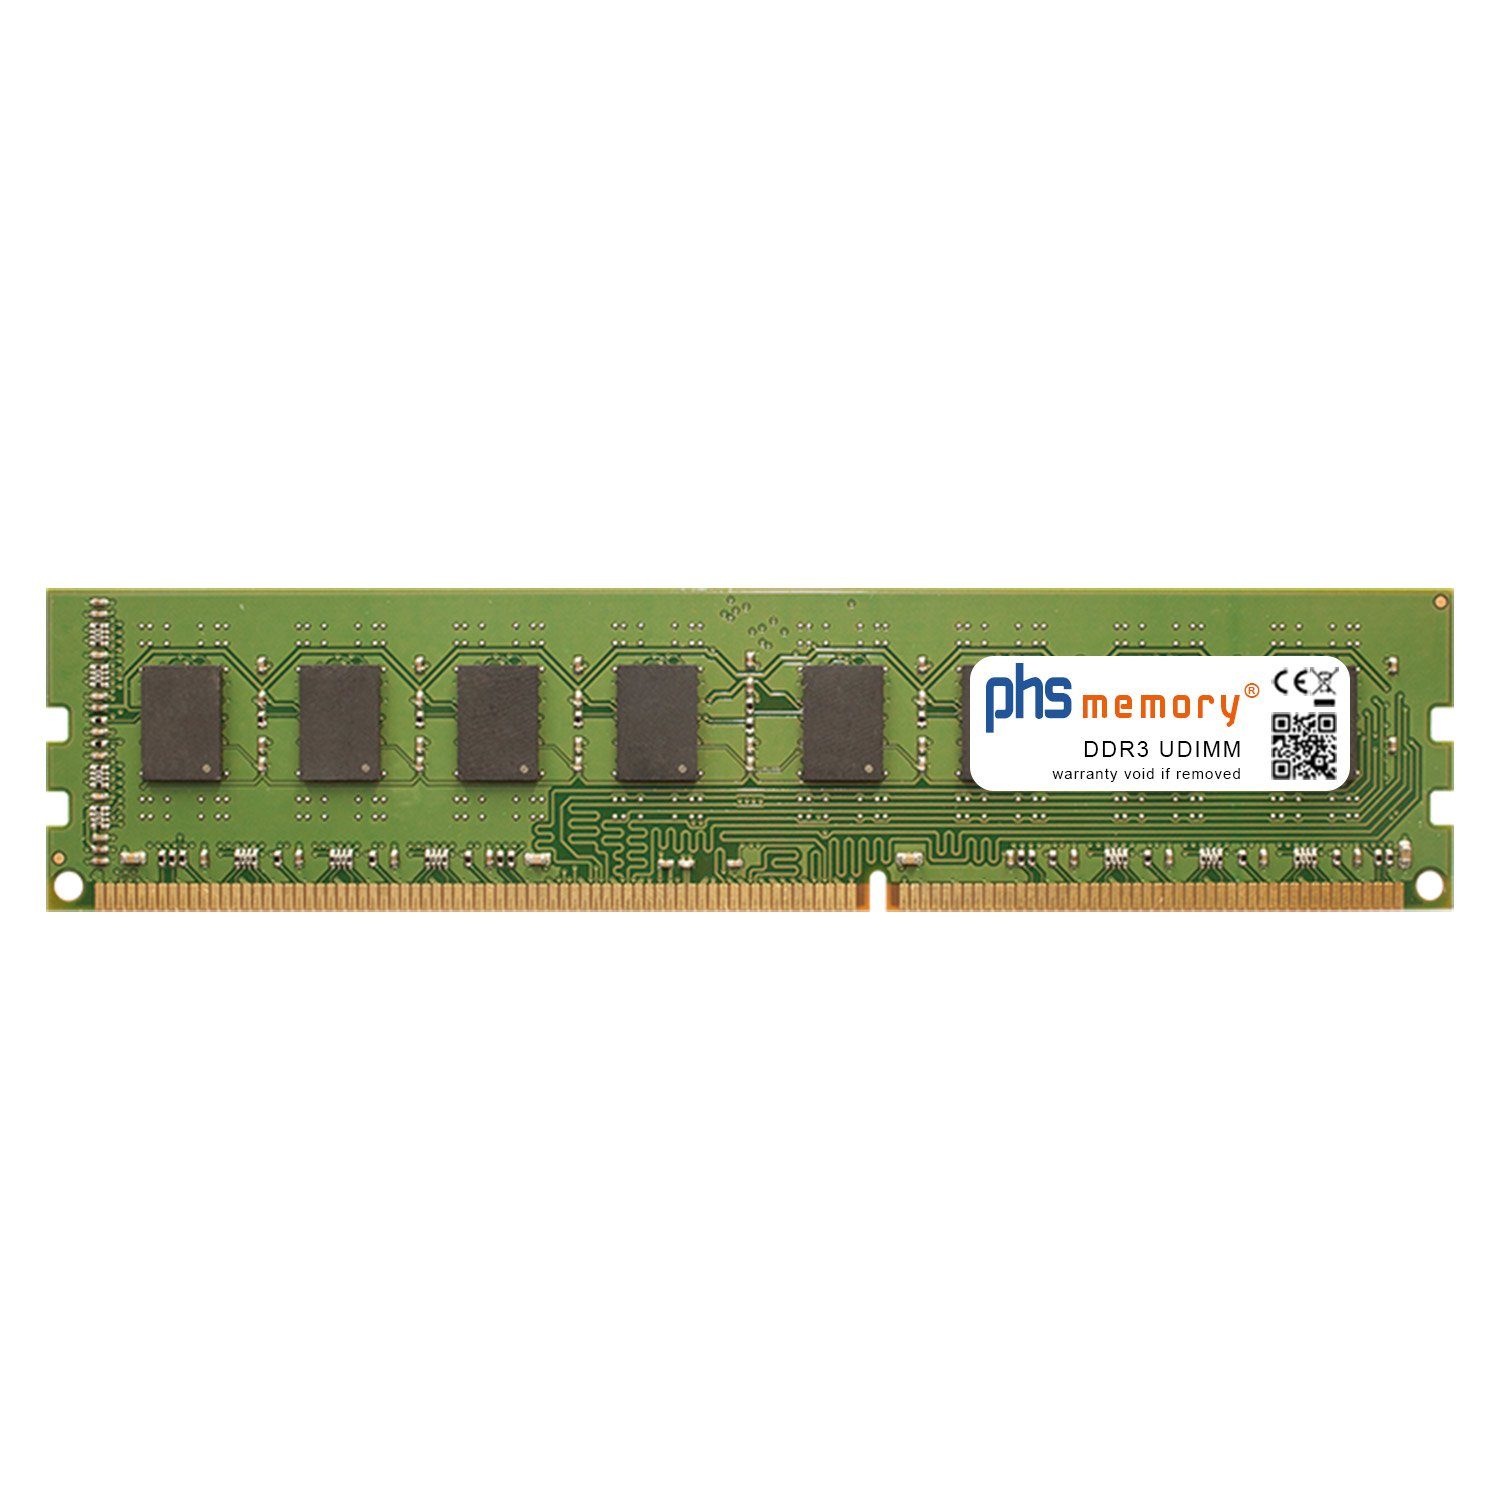 PHS-memory RAM für Jetway HI10 Arbeitsspeicher